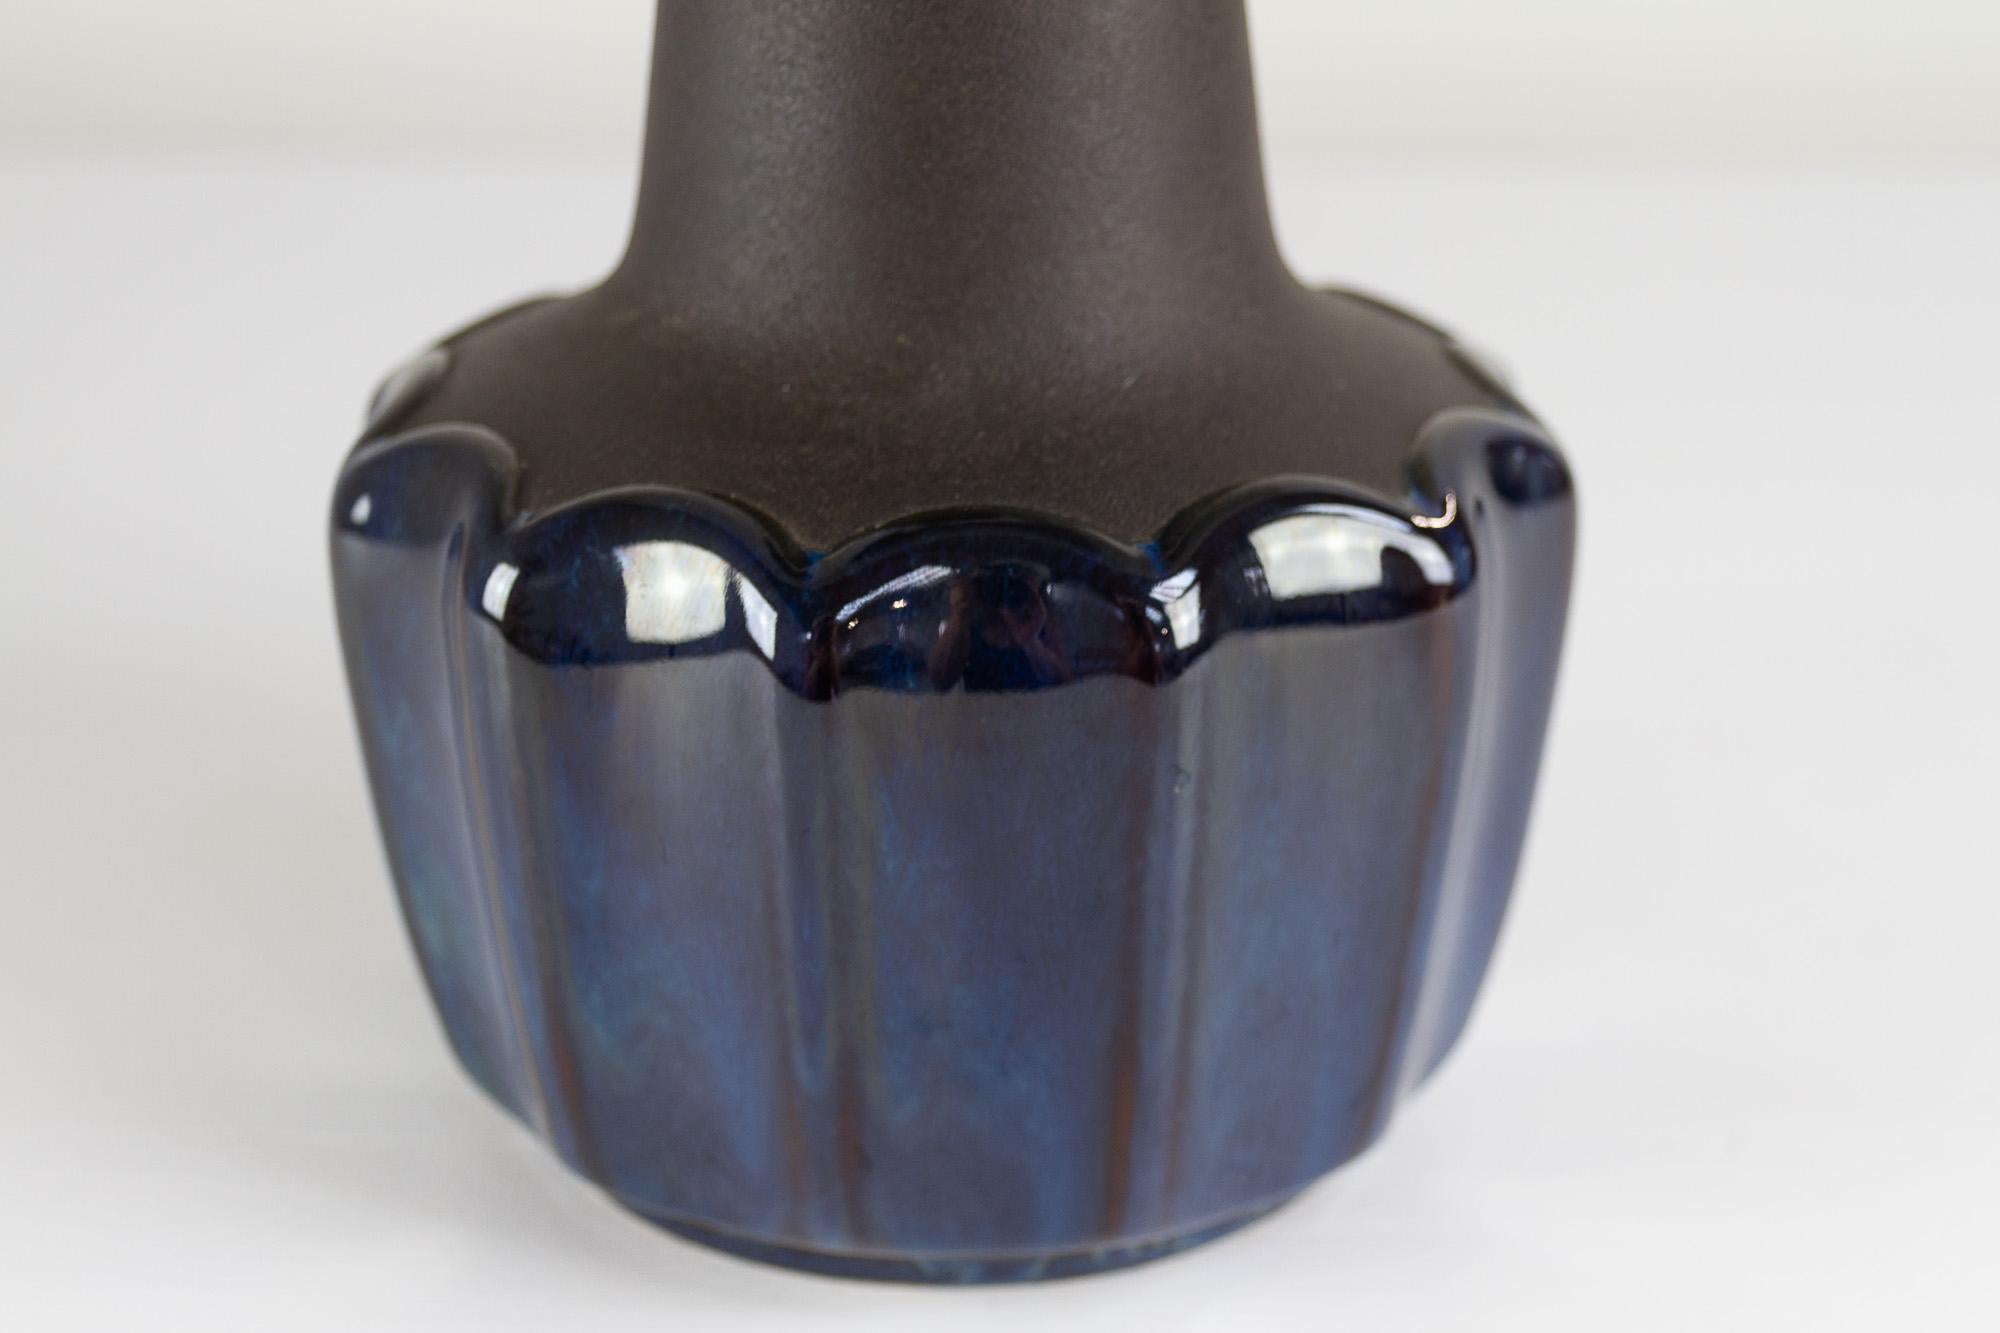 Scandinavian Modern Danish Modern Blue Ceramic Table Lamp 1051 by Einar Johansen for Søholm, 1960s. For Sale